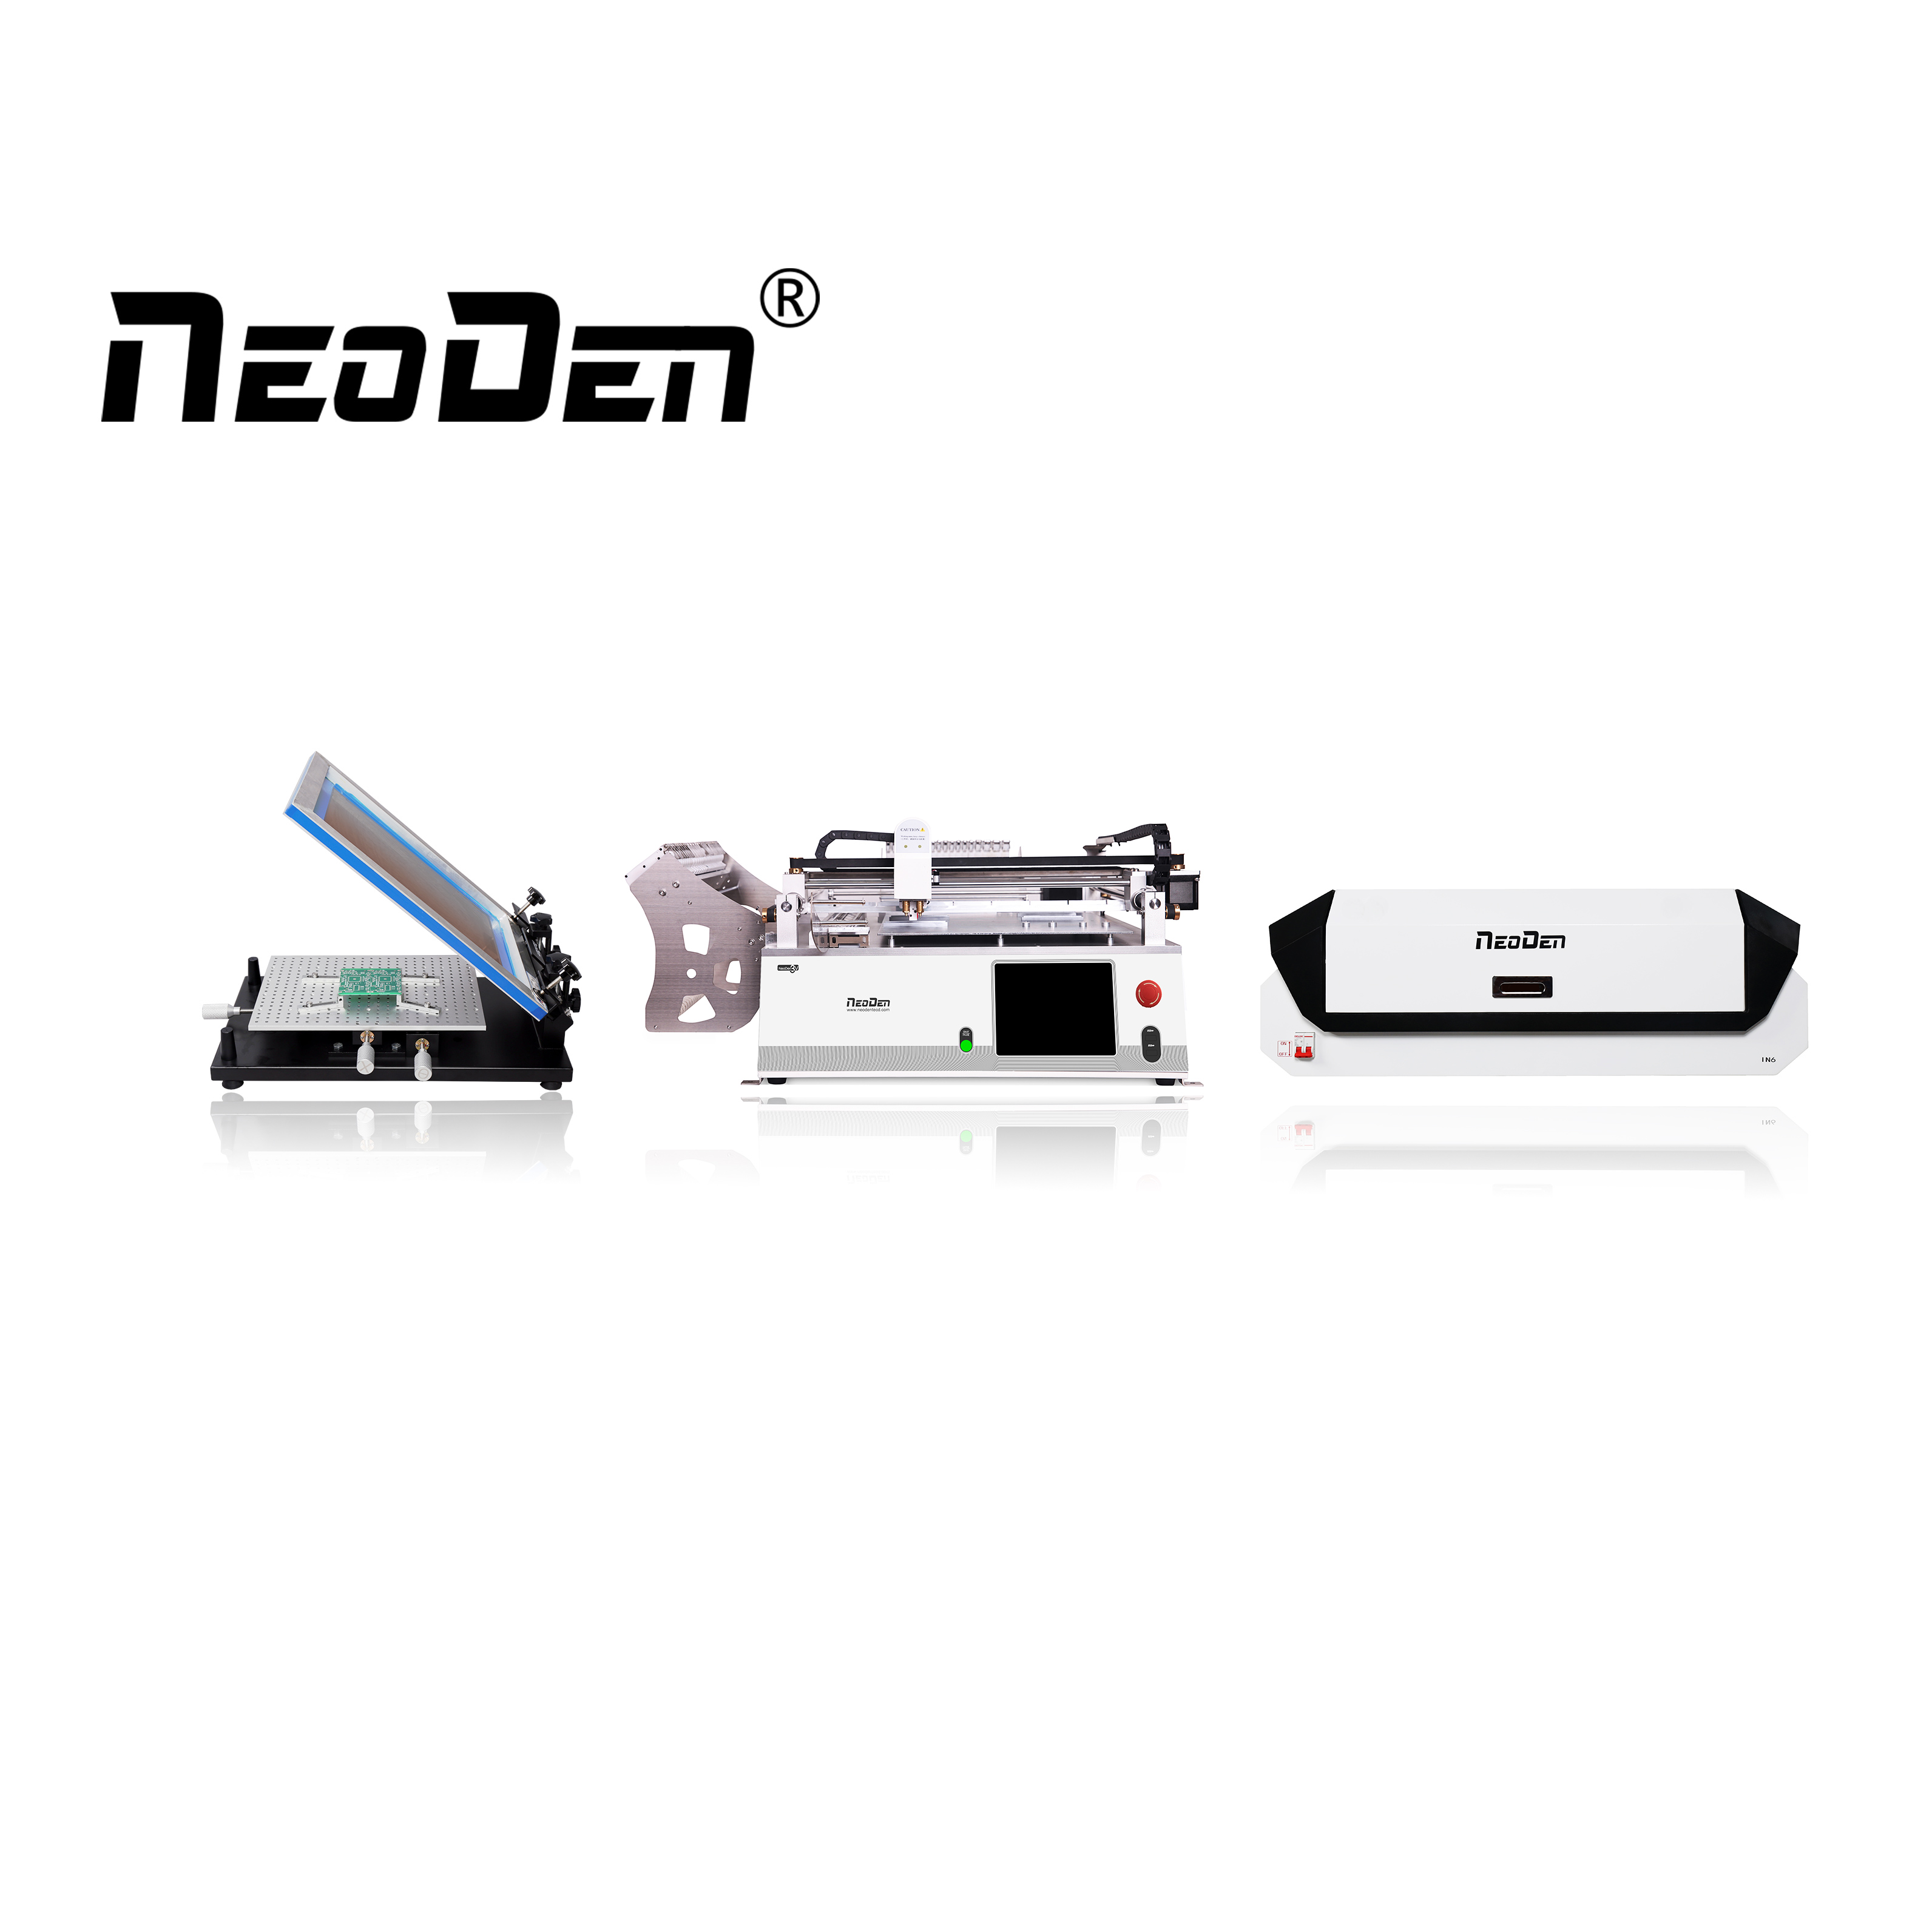 NeoDen etbuĝeta produktadlinio por noventreprenoj